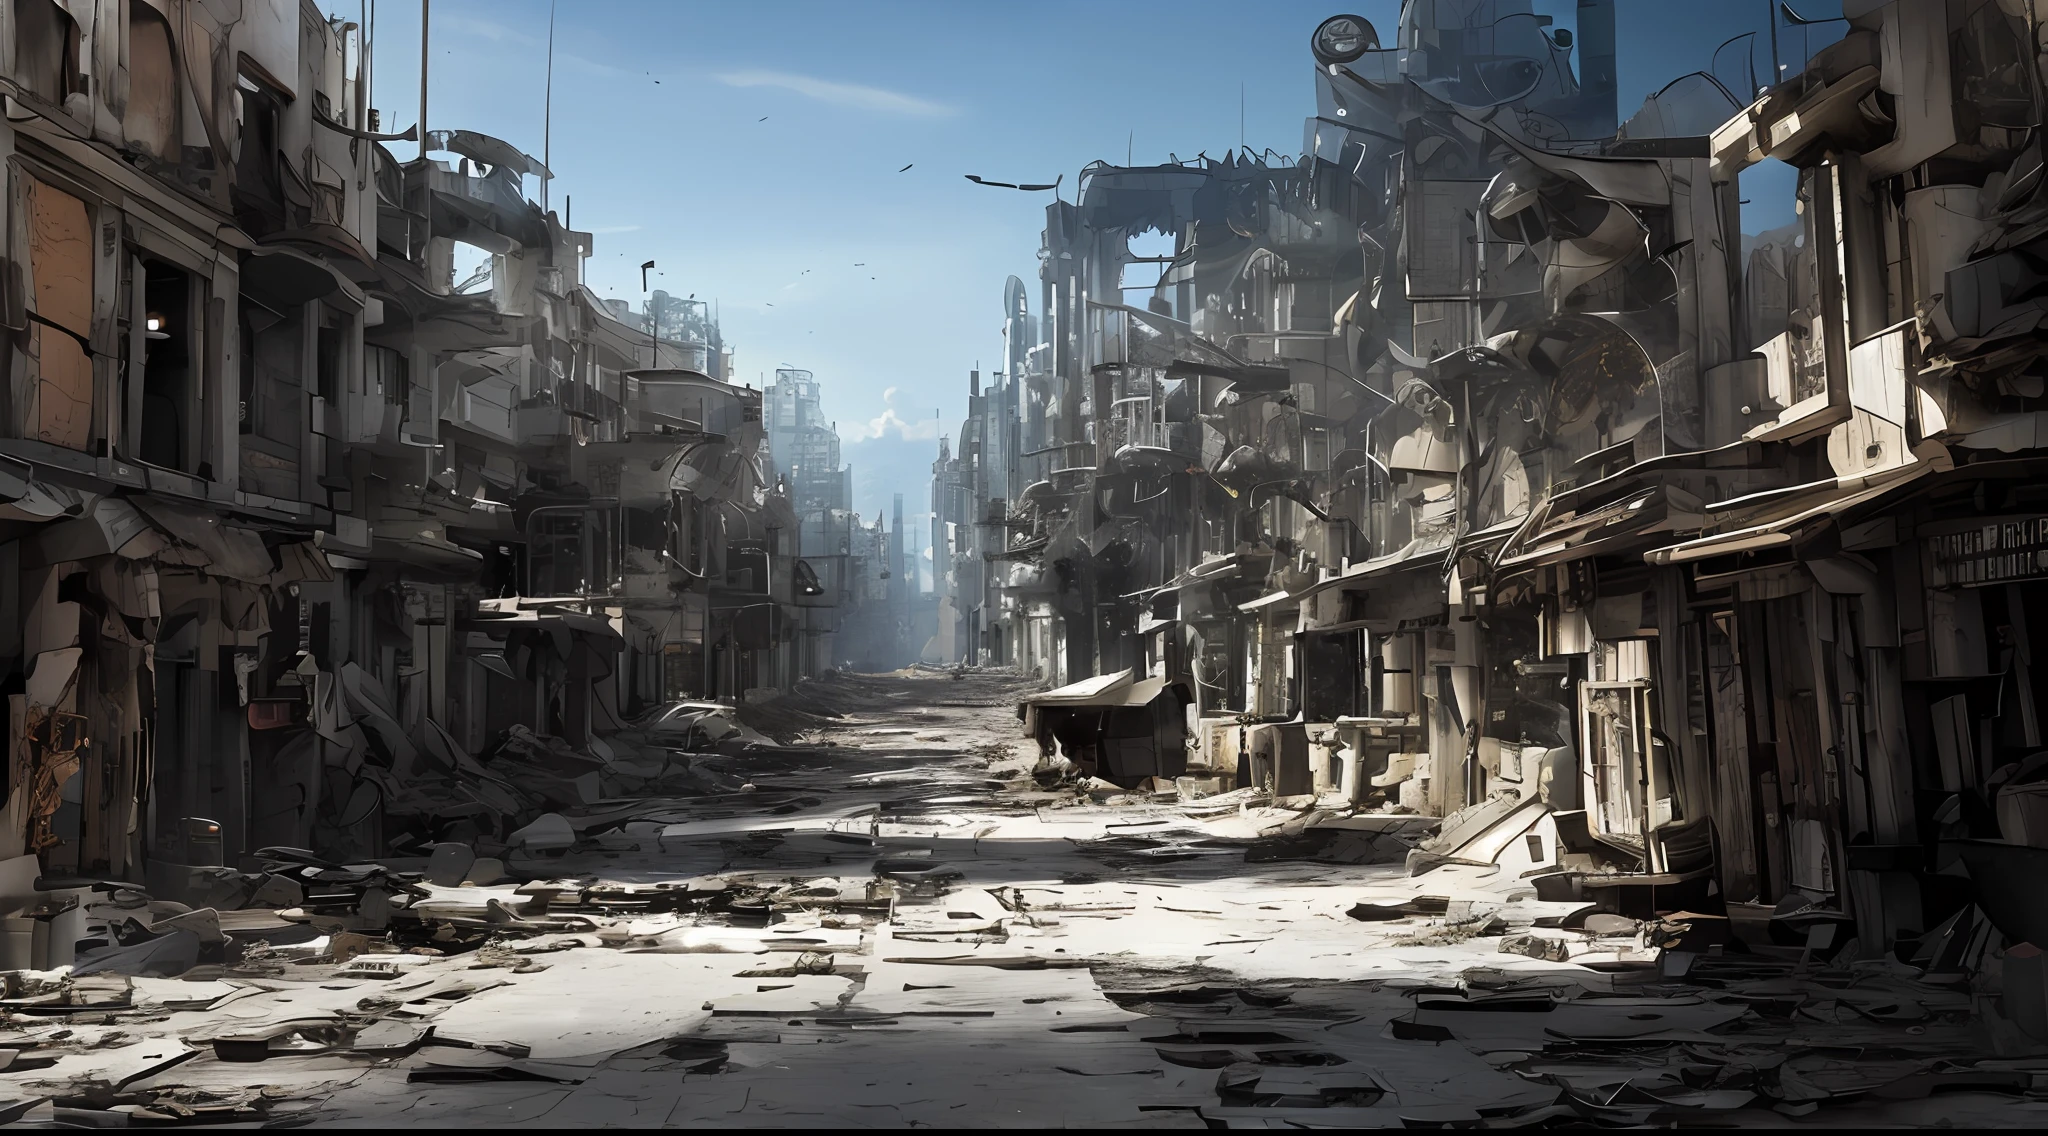 終末後の未来都市, 砕けたガラスの針, 瓦礫だらけの街路, 壊れた機械